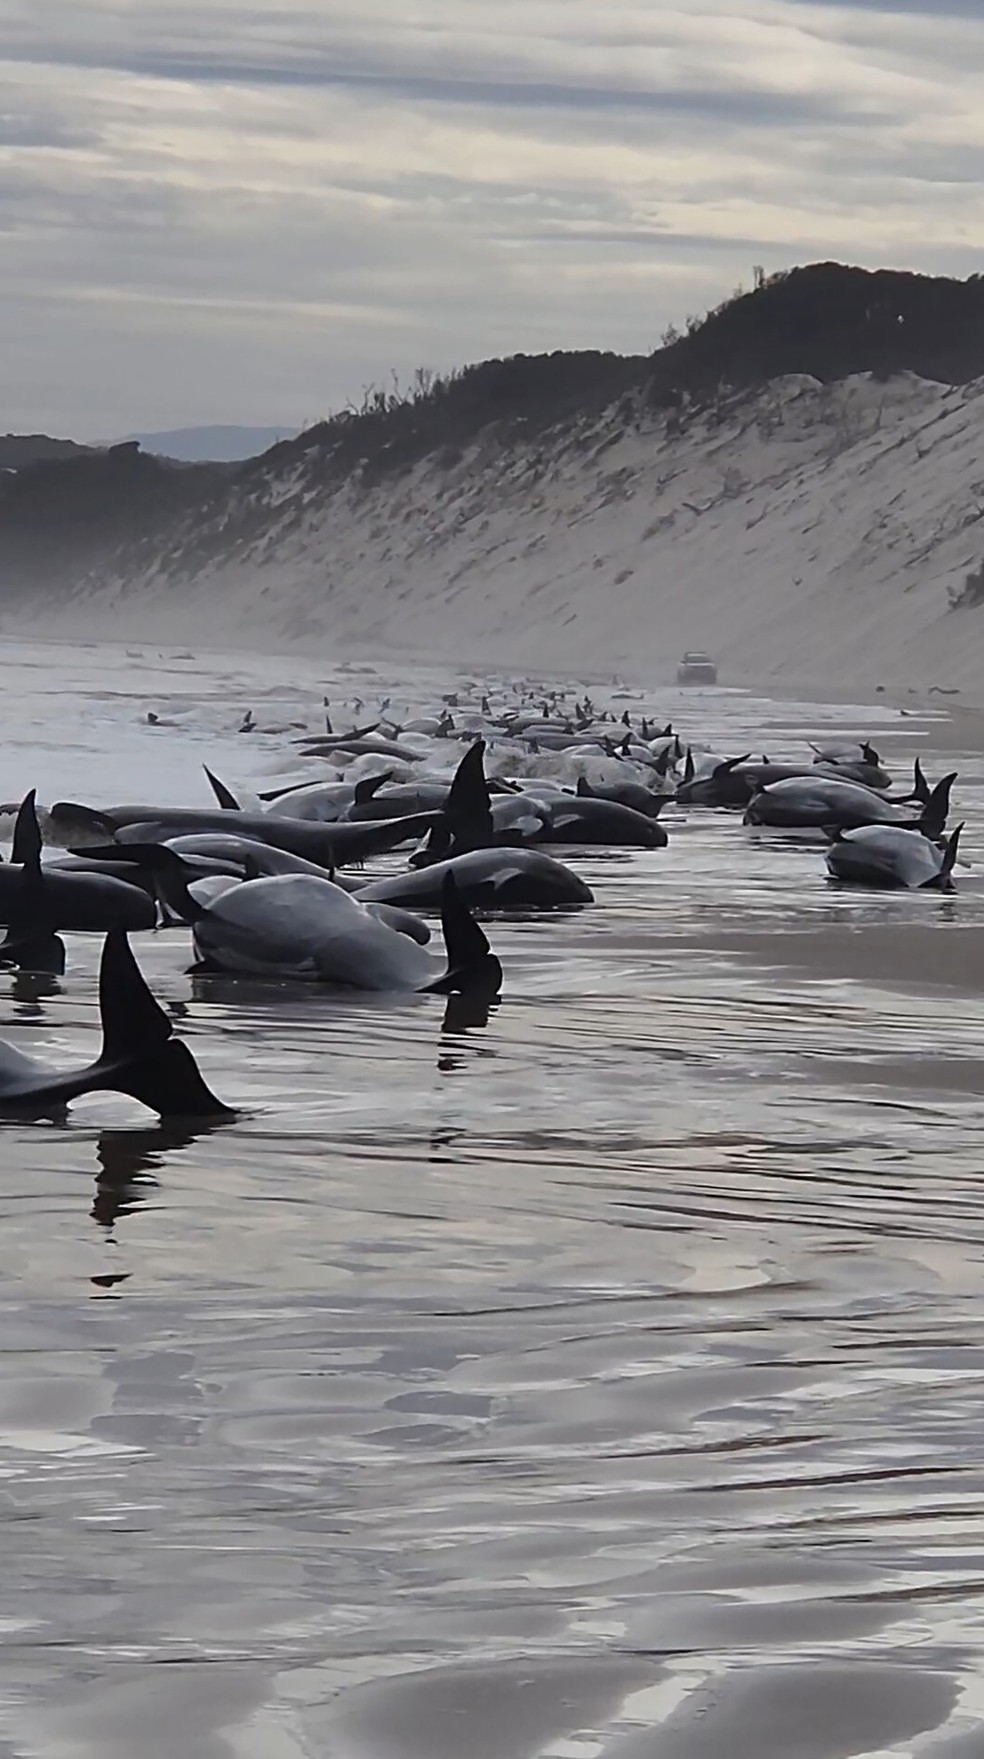 Dezenas de baleias encalhadas na costa da Tasmânia — Foto: Andrew Breen/Huon Aquaculture via AP